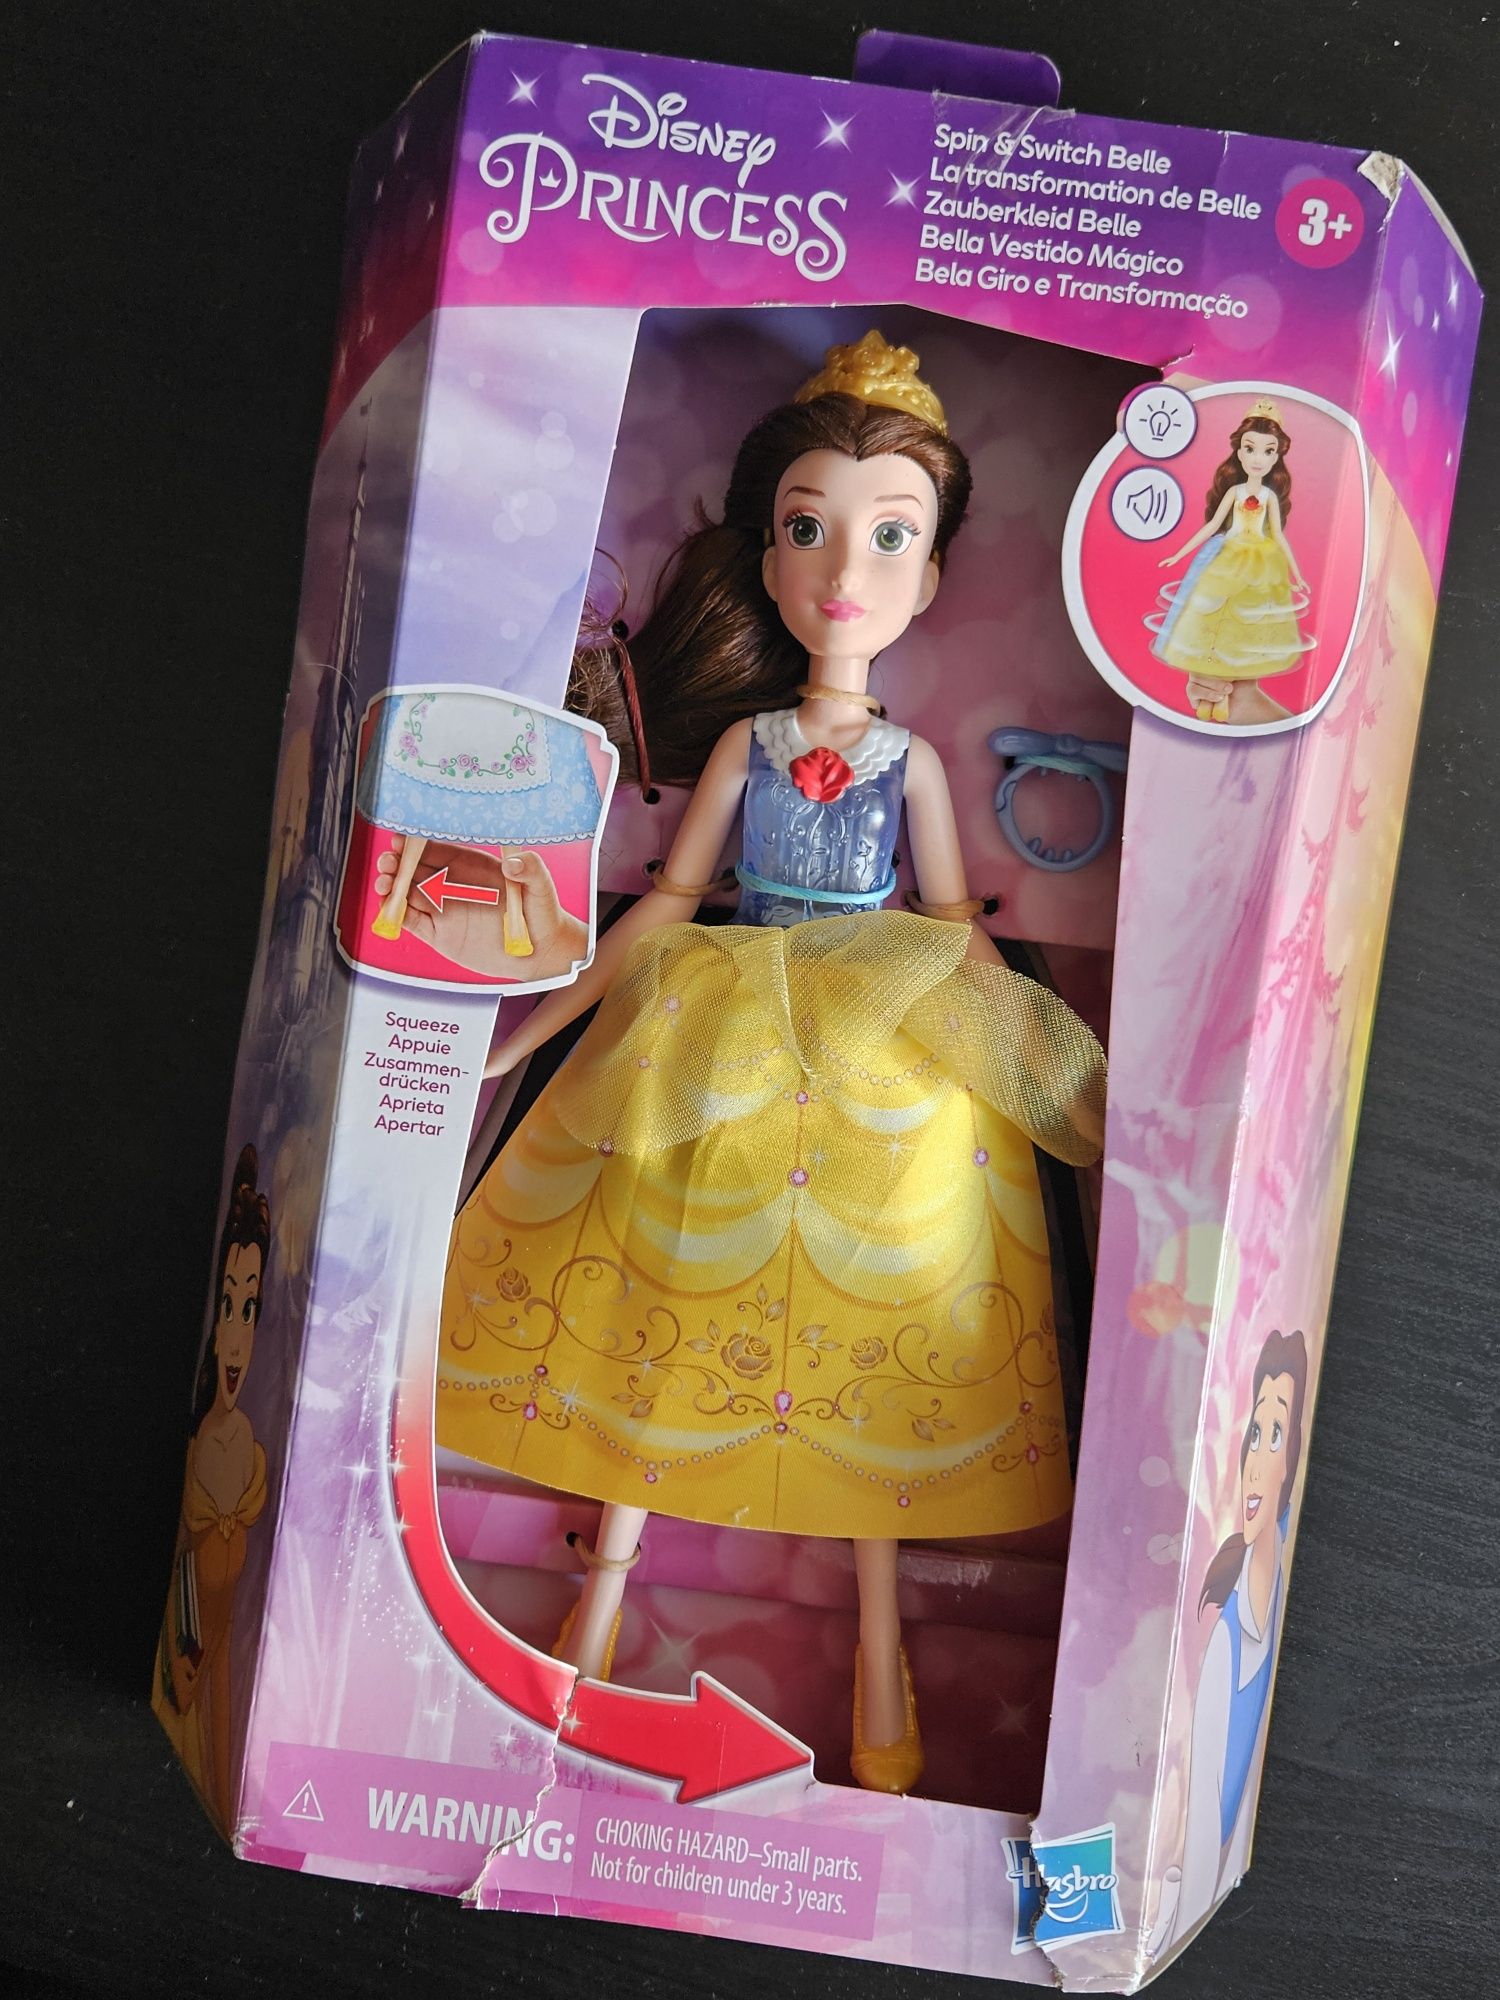 Disney Princess -Bella Vestido
mágico - Muñeca